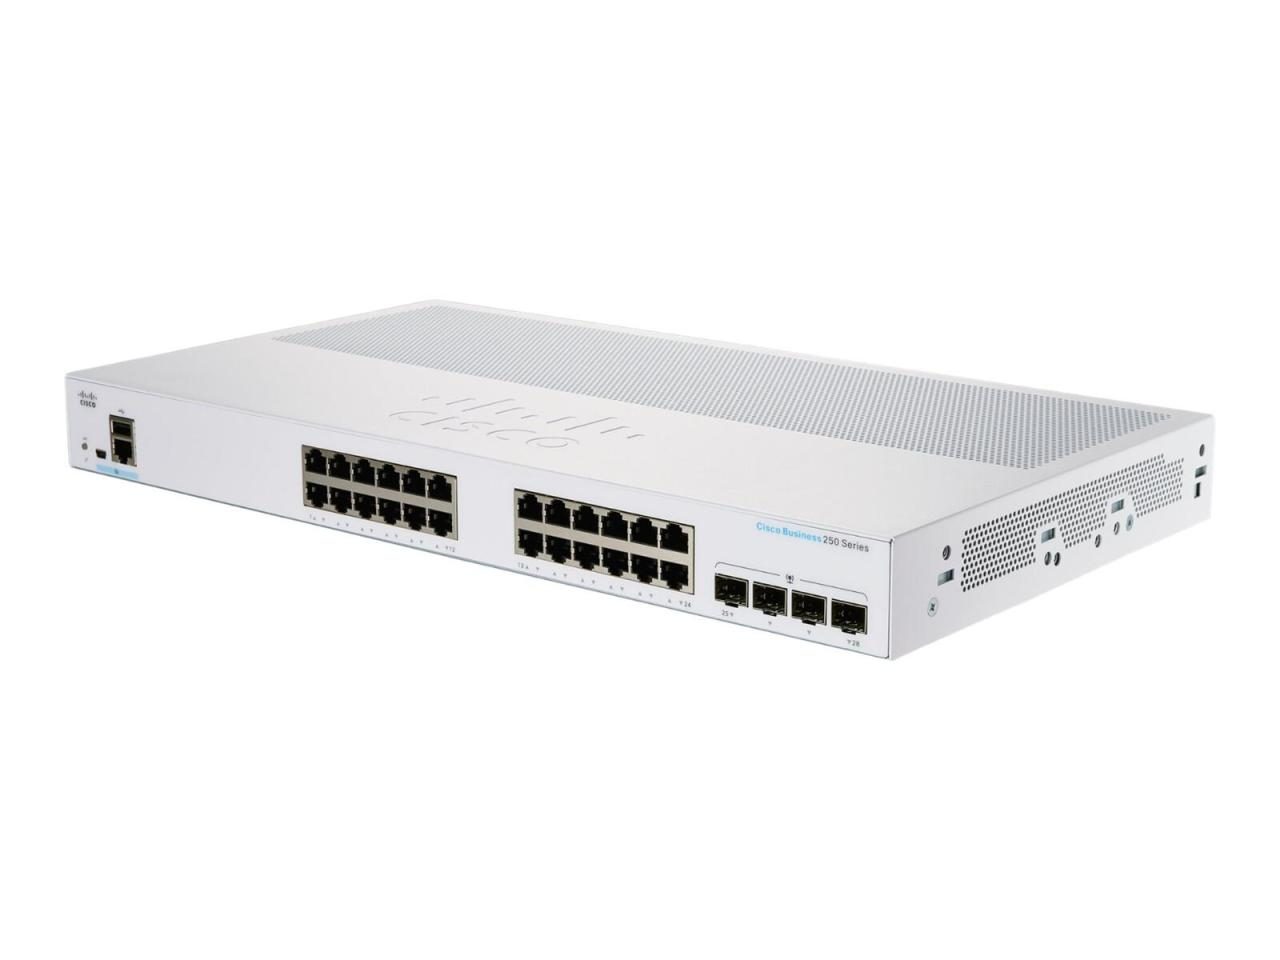 Cisco Switch Business 250-Series 28-Port 1GbE smart managed von Cisco